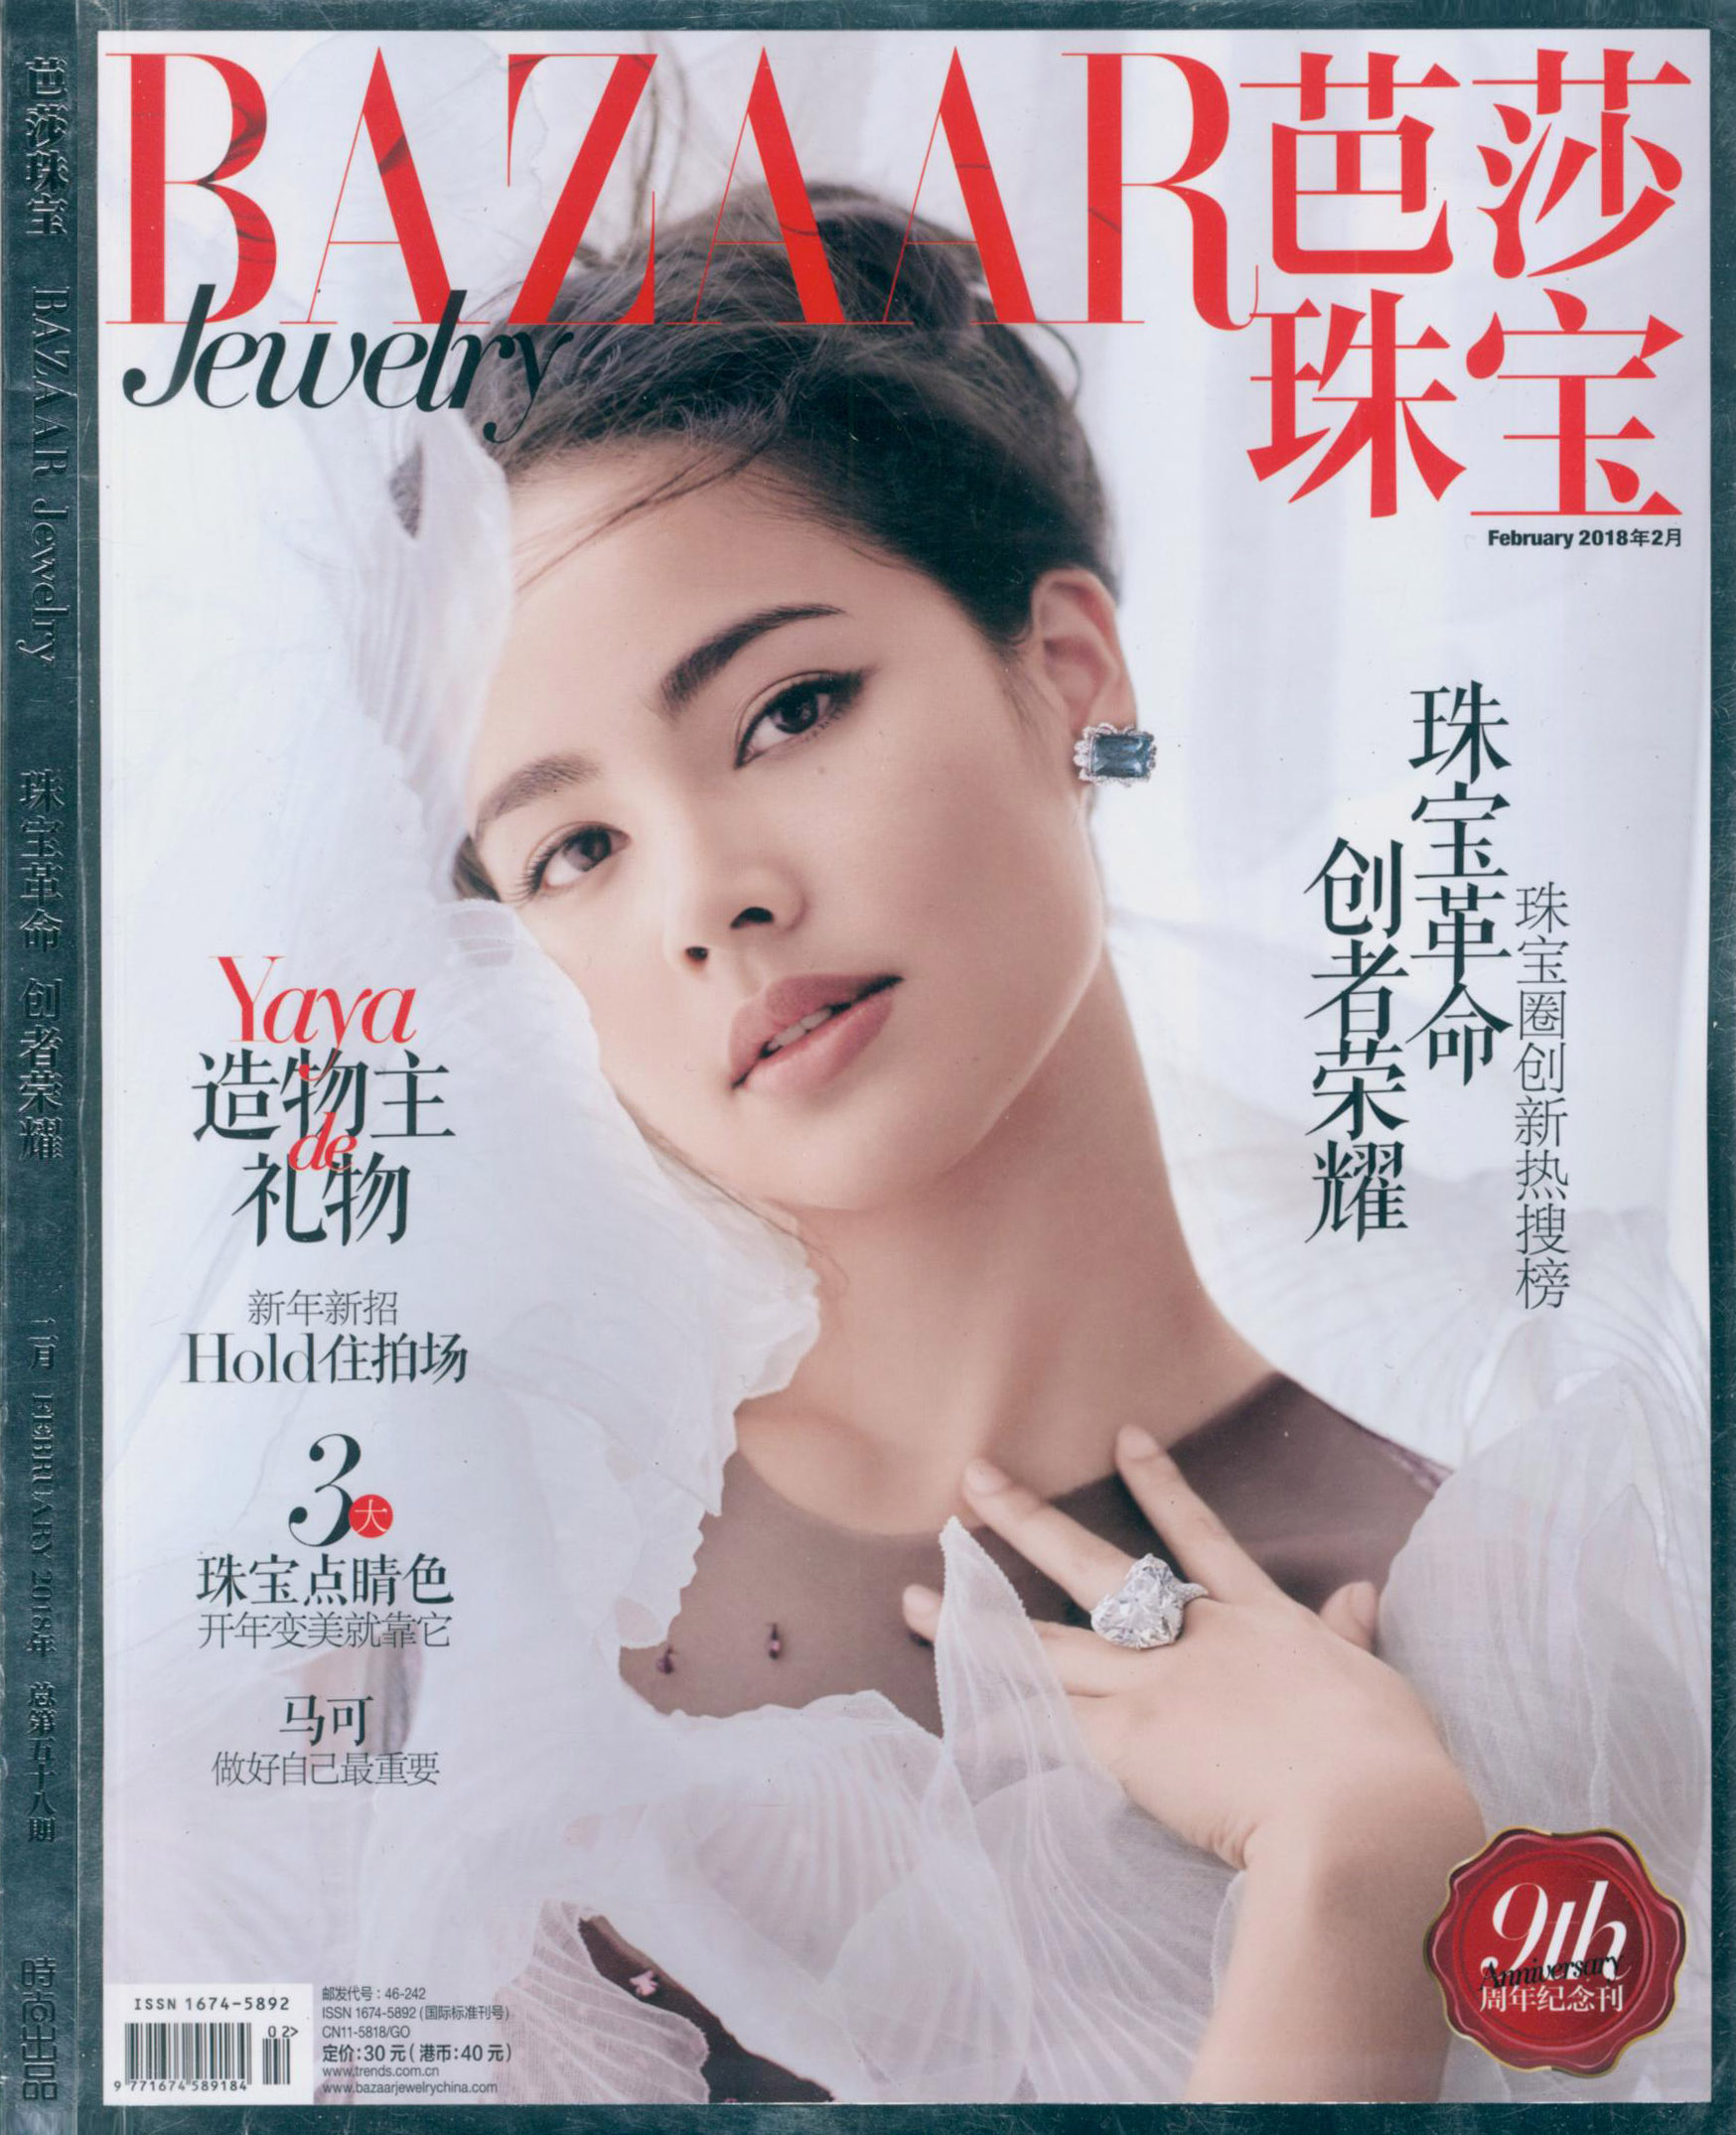 《芭莎珠宝》BAZAAR JEWELRY专业珠宝杂志2018年02月号